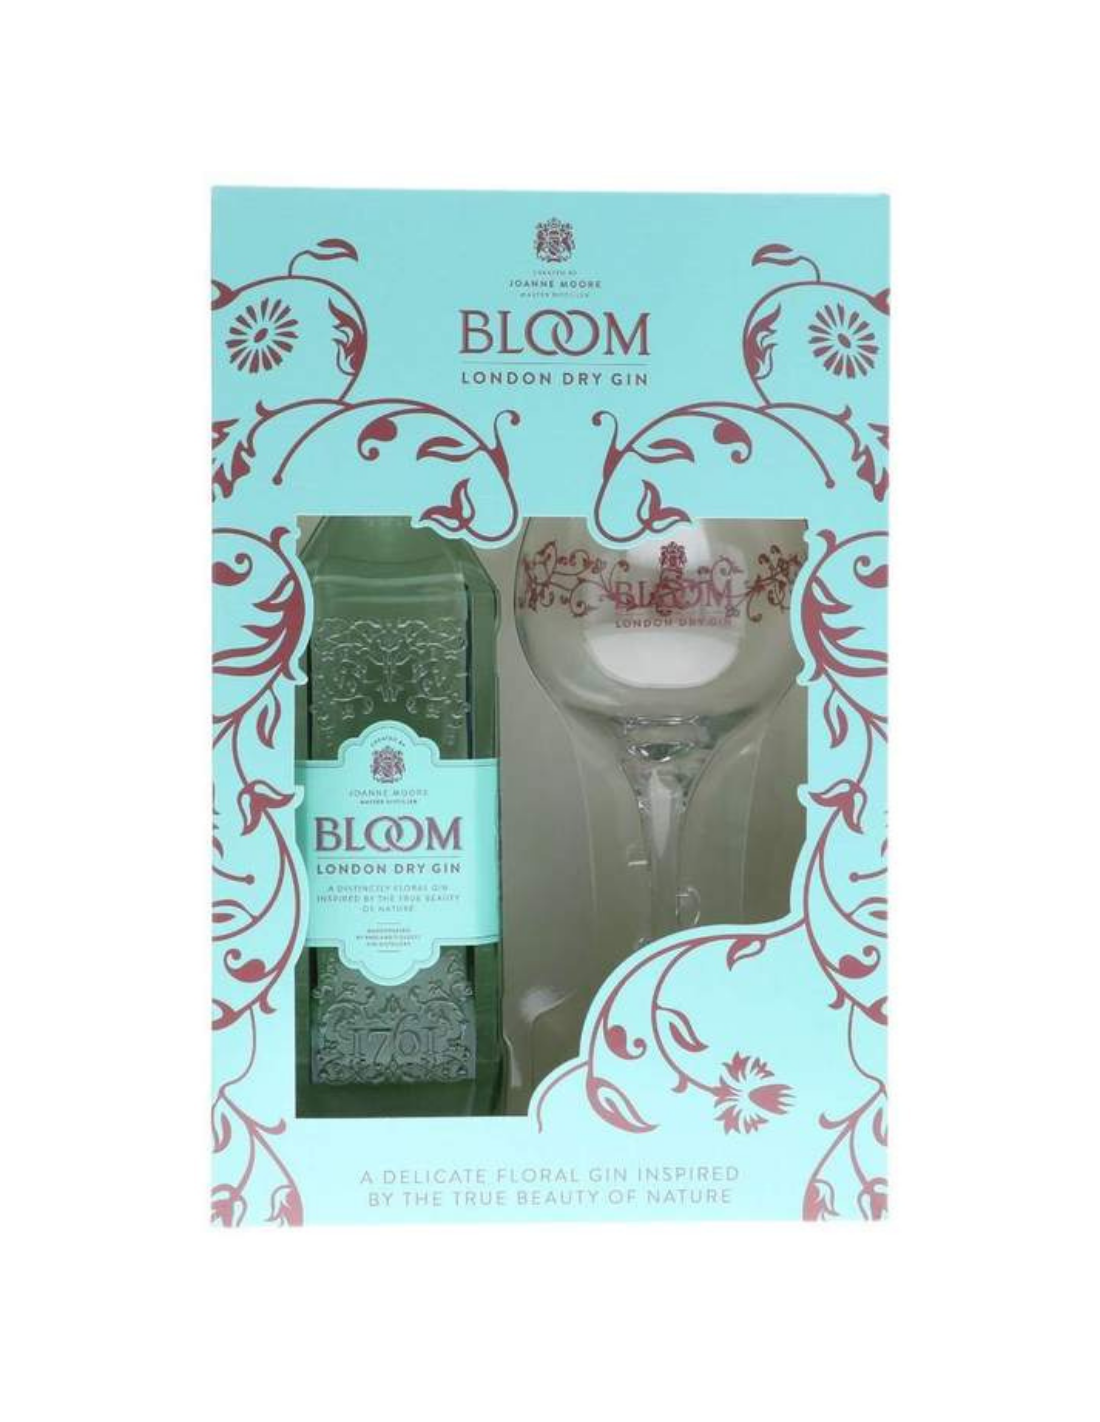 Set Cadou Gin Bloom + Pahar Copa, 40% alc., 0.7L, Anglia alcooldiscount.ro